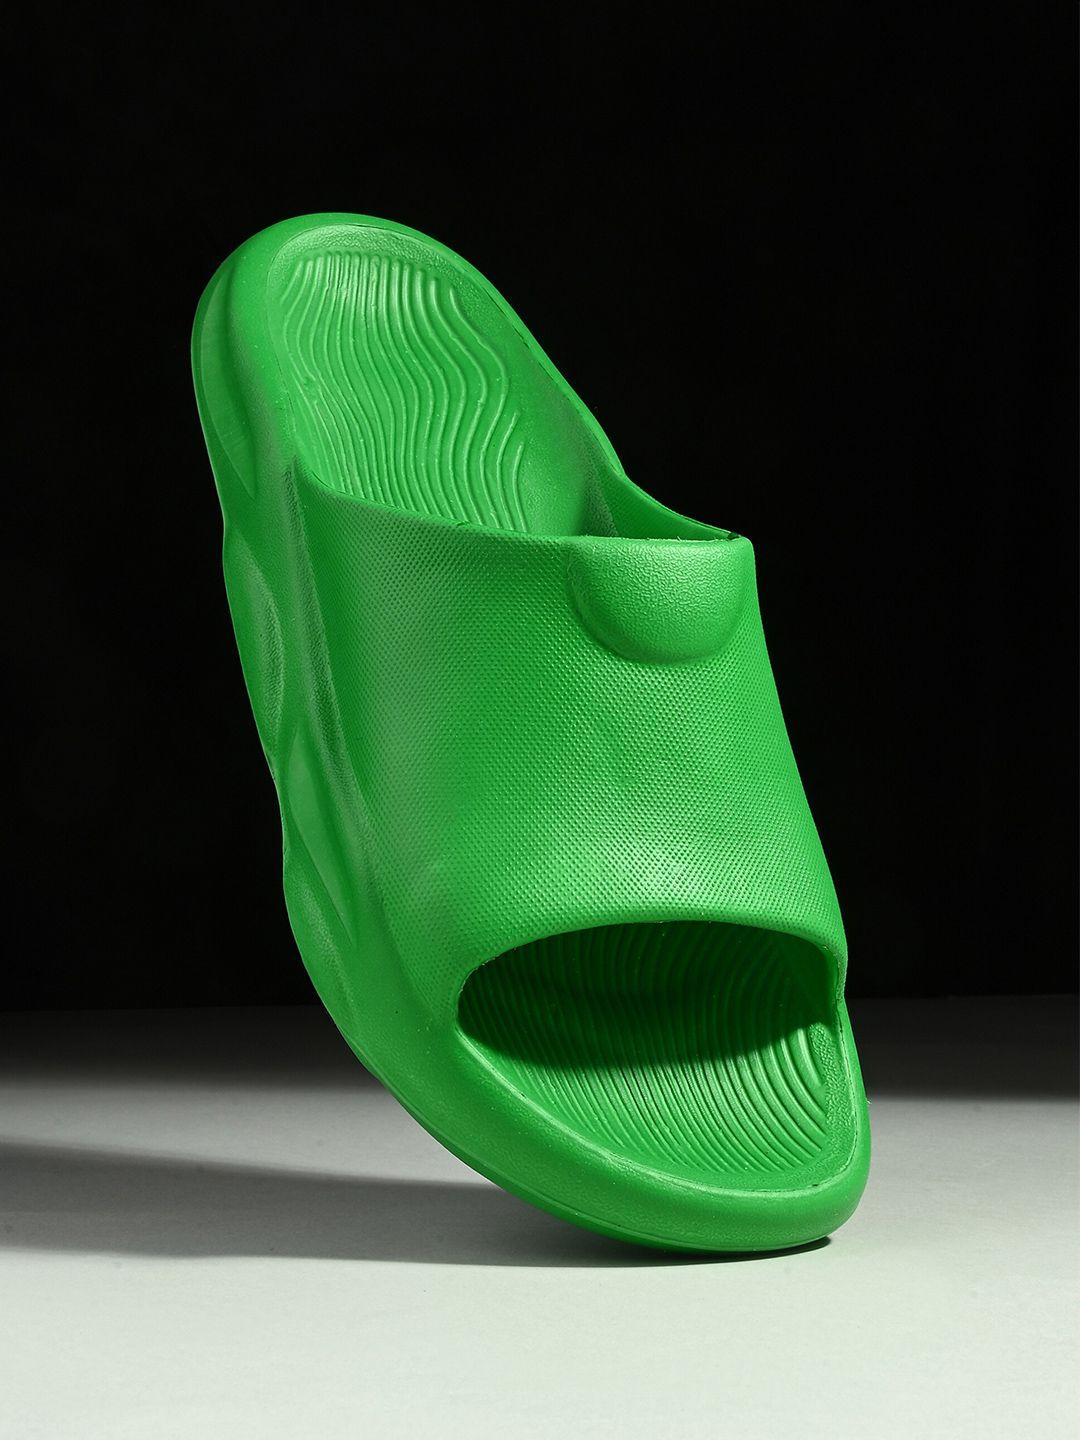 hrx by hrithik roshan men green rubber sliders